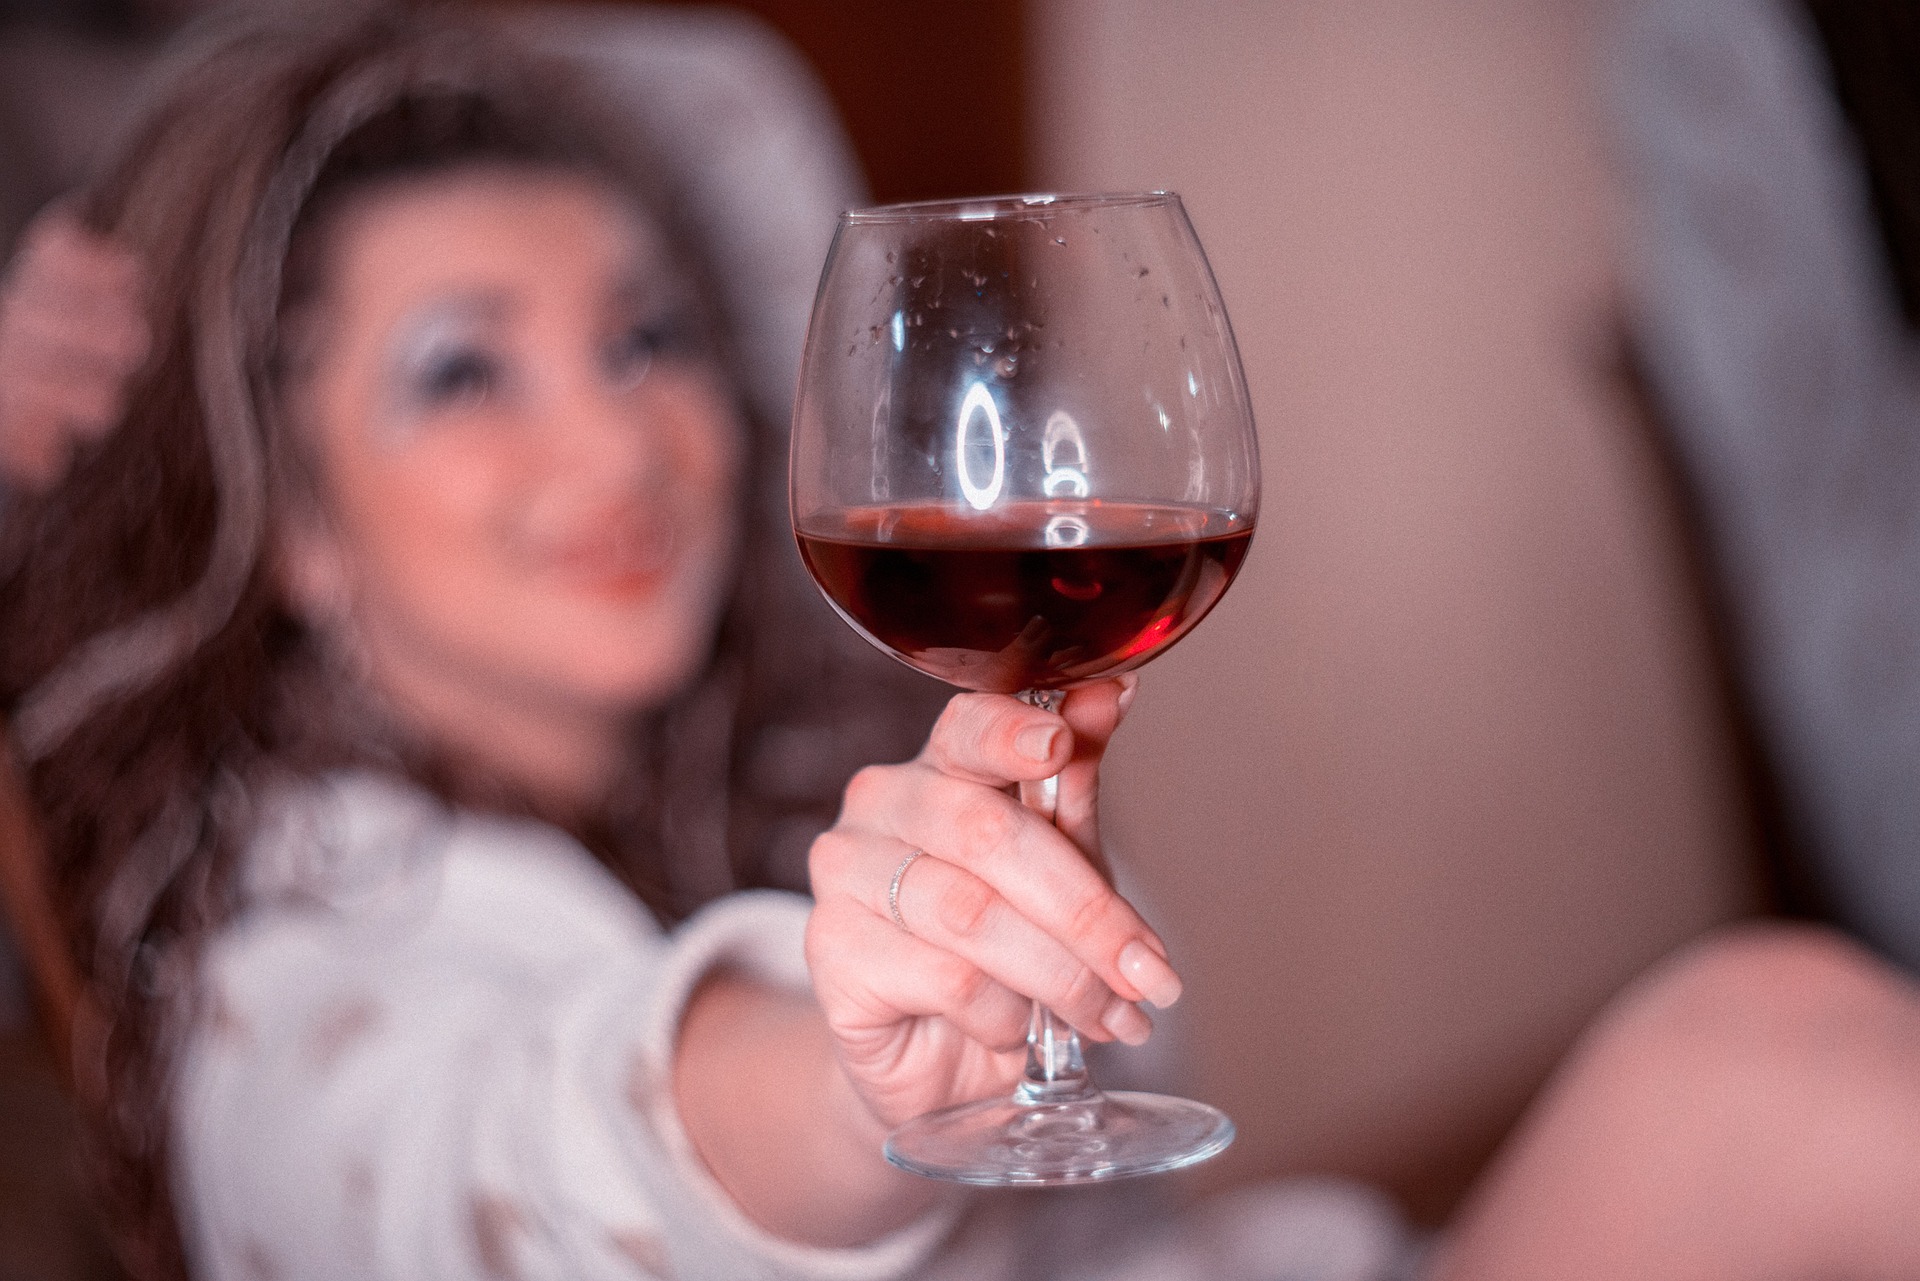 Картинка пить вино. Женщина с бокалом вина. Девушка с бокалом вина. Бокал вина в руке девушки. Девушка в фужере.